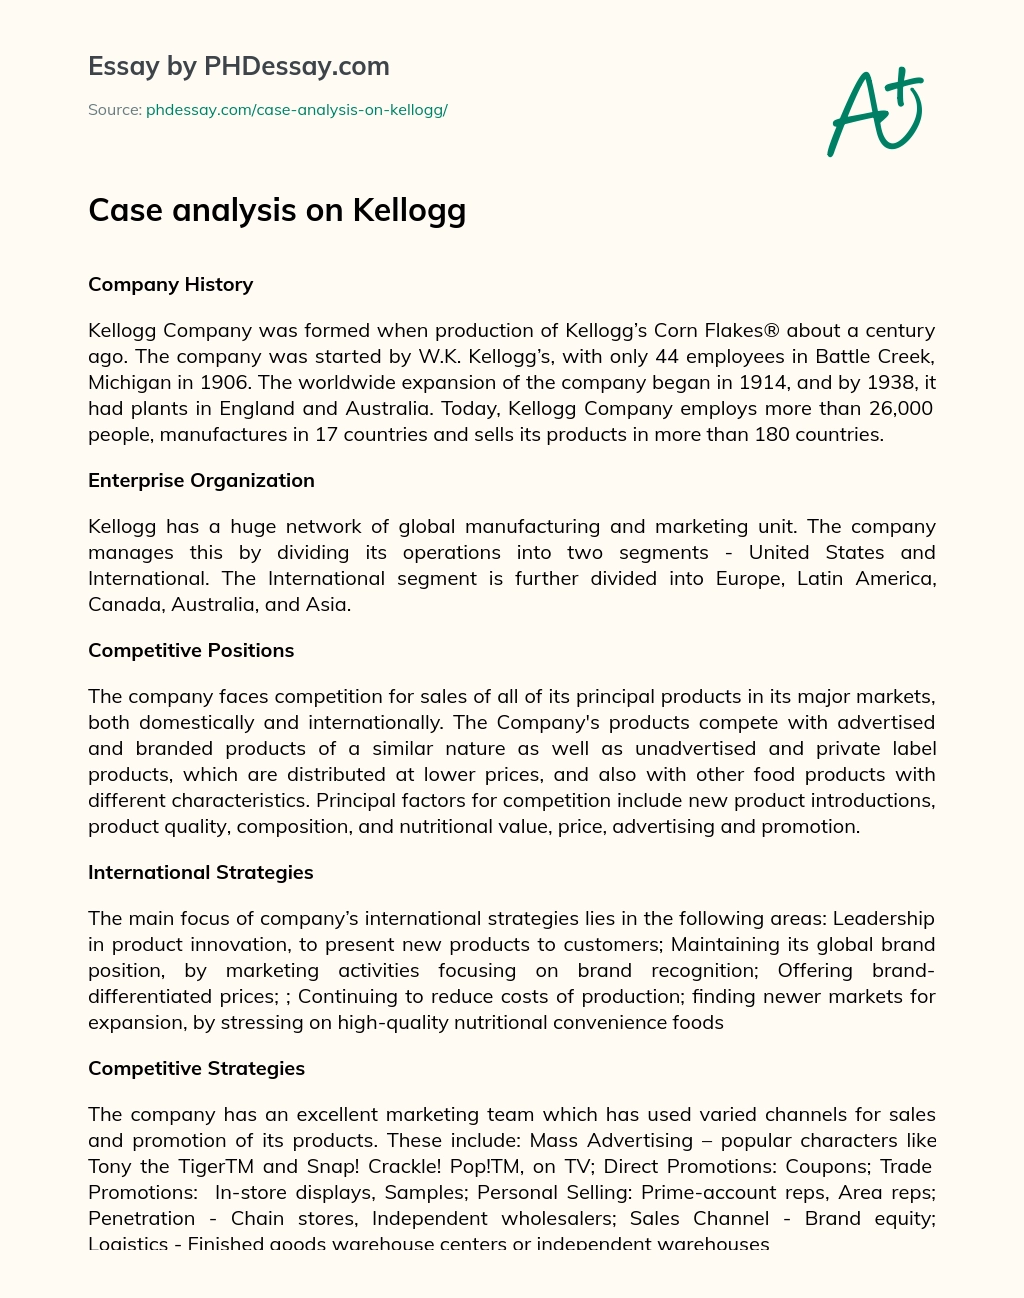 Case analysis on Kellogg essay